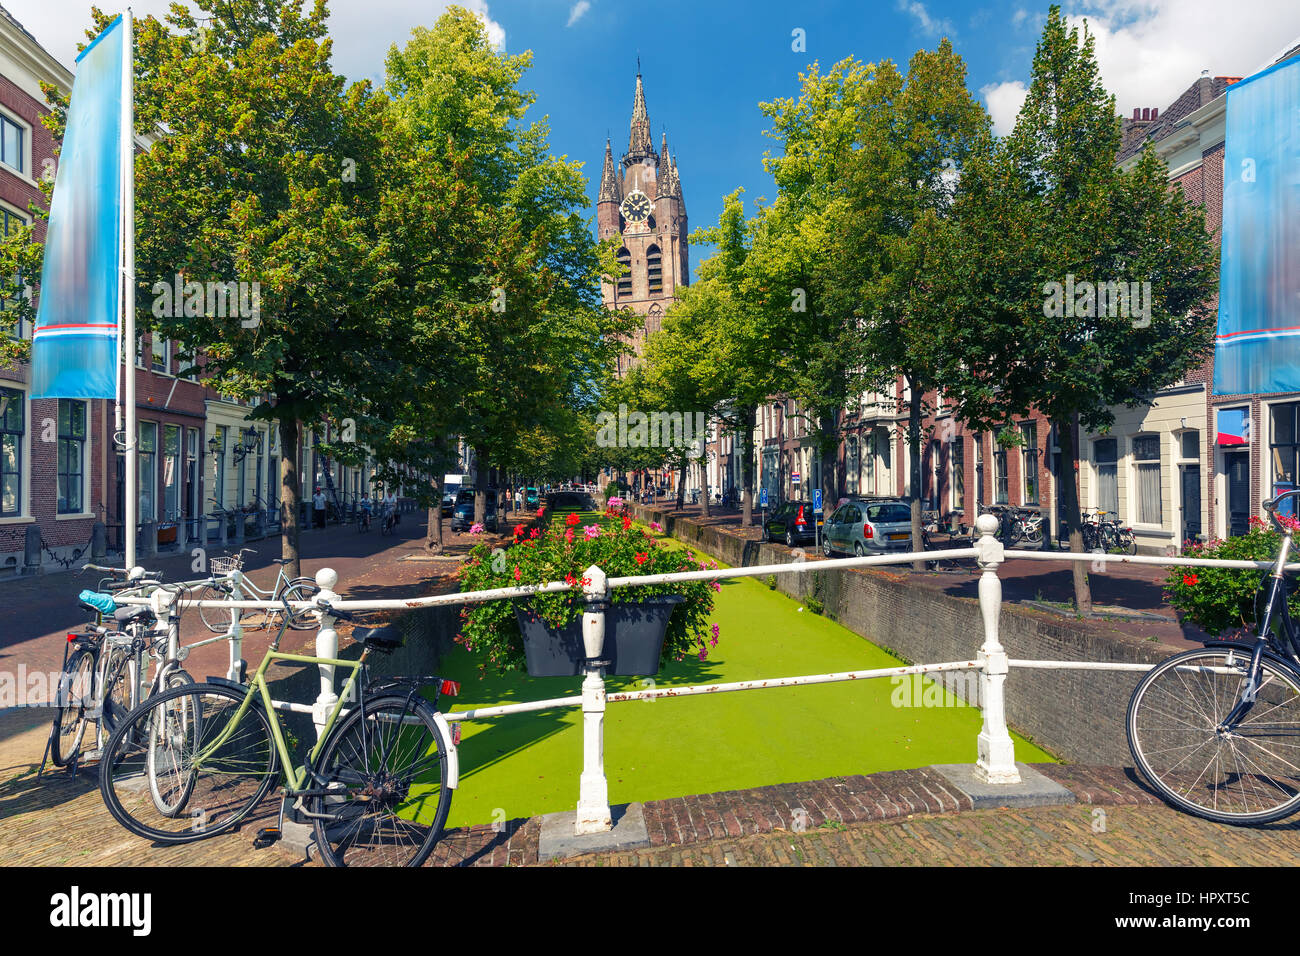 Die malerischen Oude Delft Kanal und schiefen Turm der gotischen protestantischen Oude Kerk Kirche an einem sonnigen Tag in Delft, Zuid-Holland, Niederlande. Stockfoto